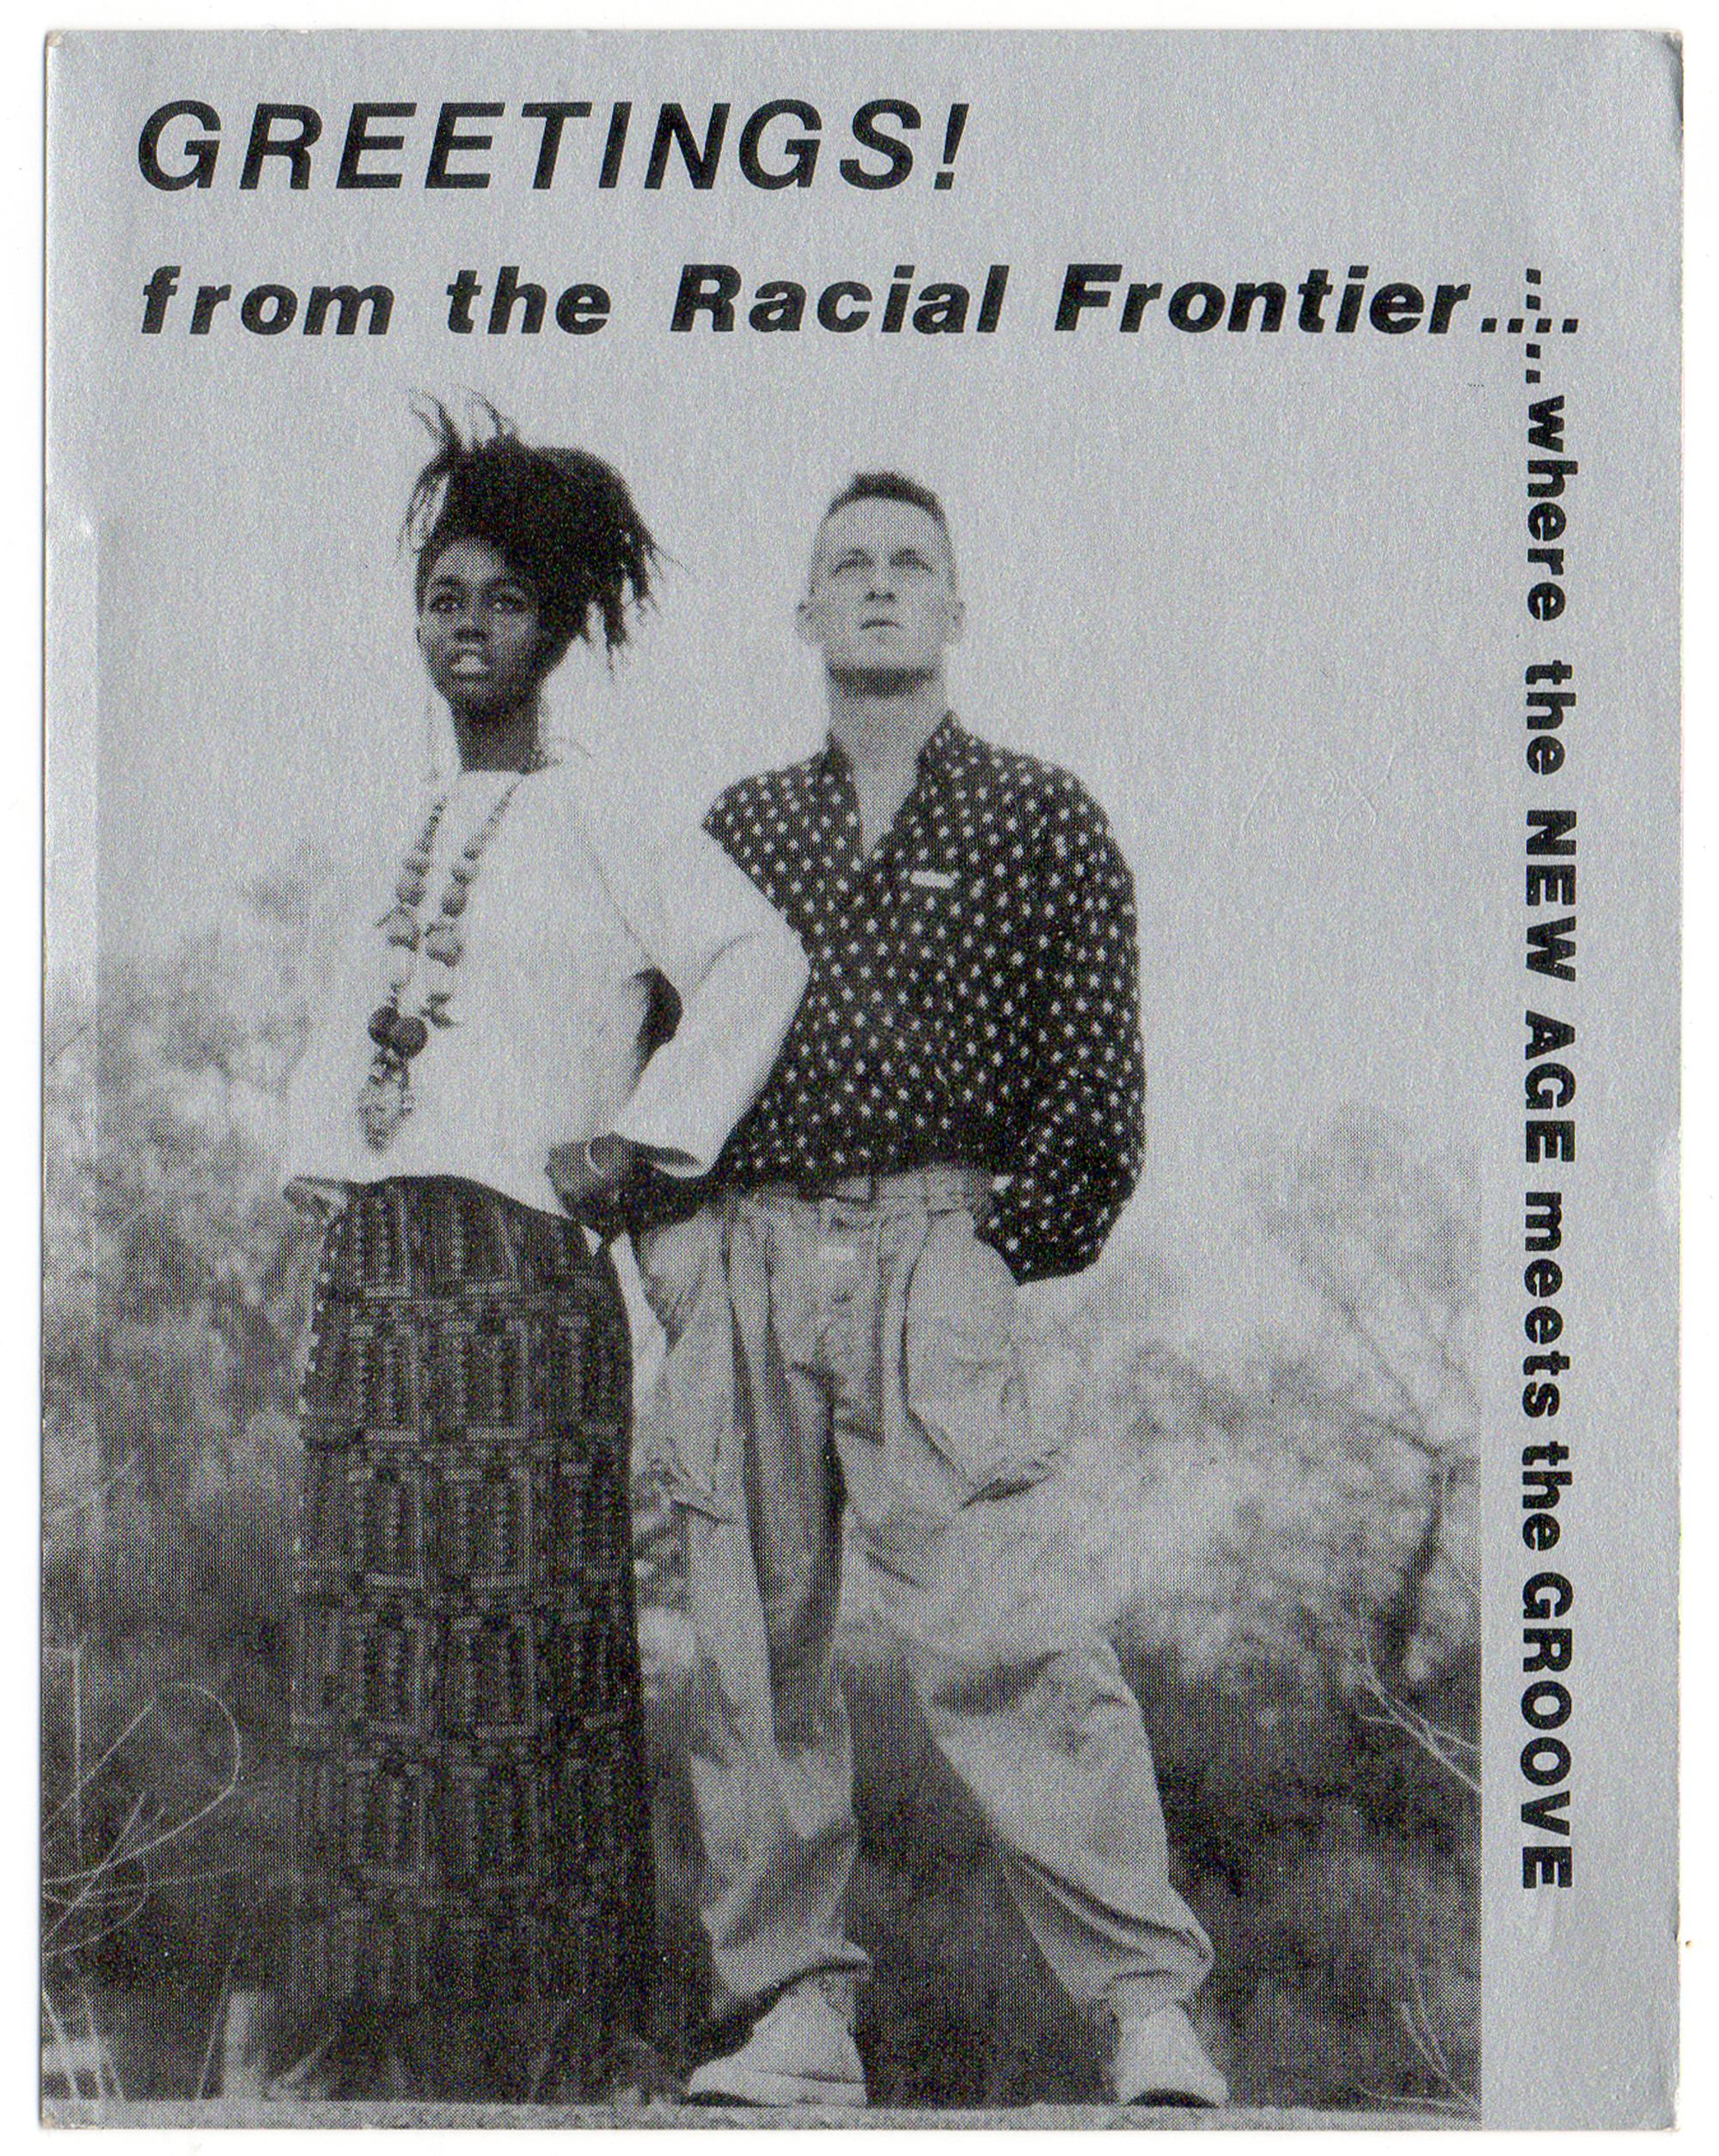 UT Austin - The Racial Frontier